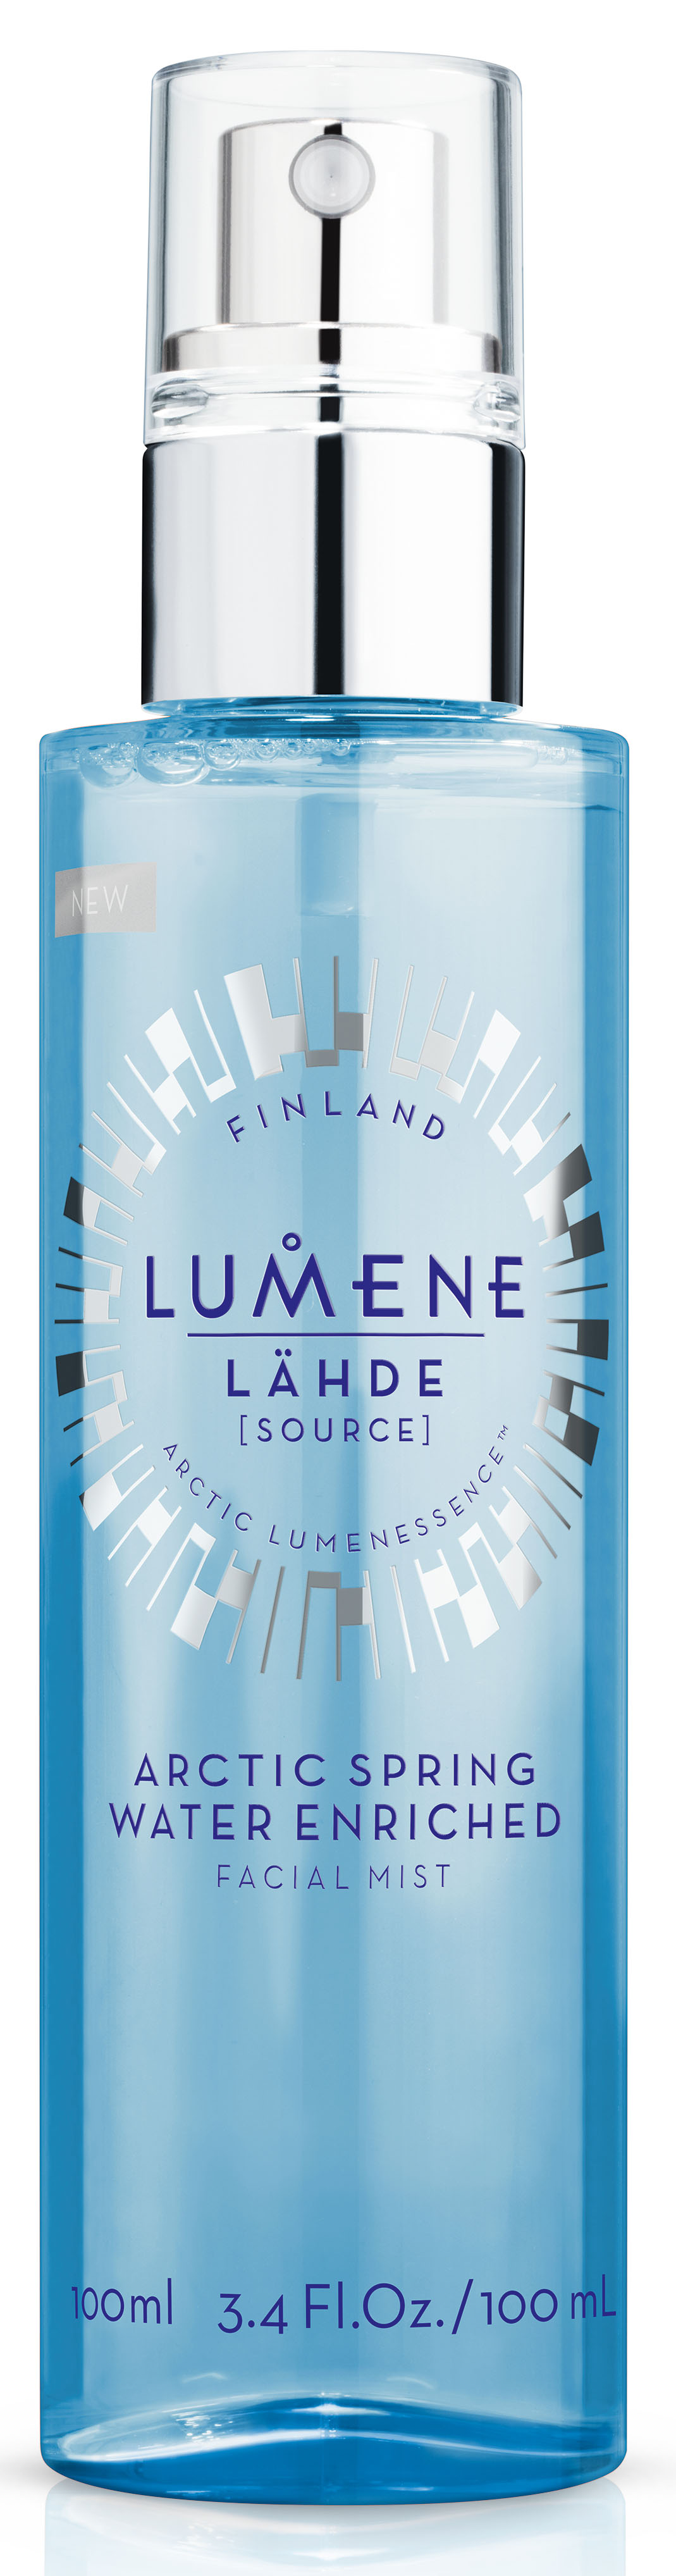 заказать и купить Lumene Lahde Увлажняющая освежающая дымка для лица, 100 мл